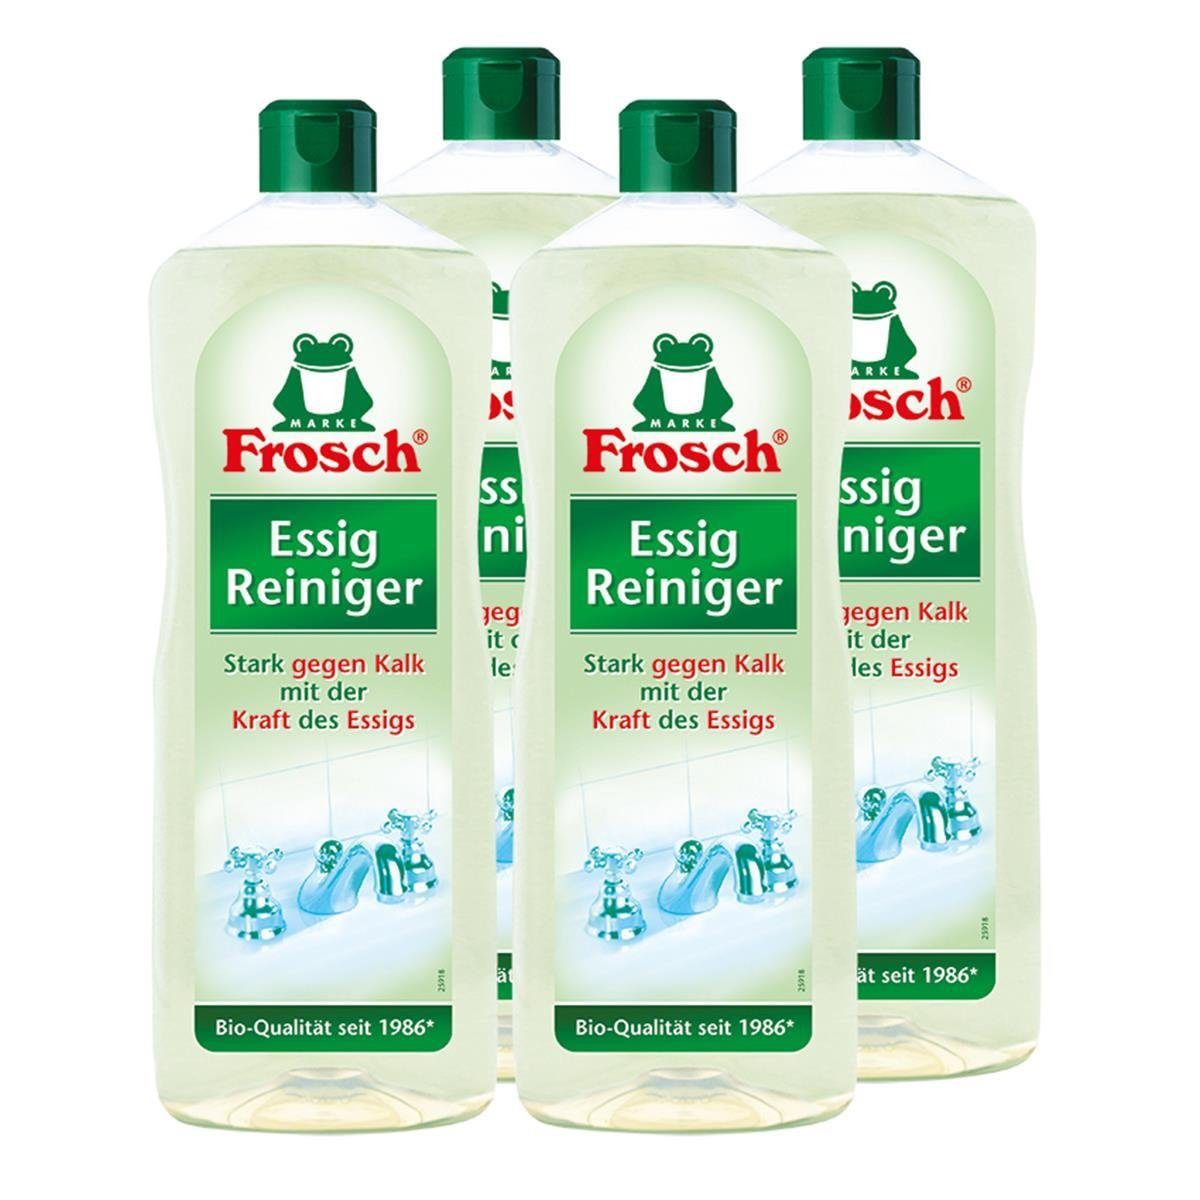 FROSCH 4x Frosch Essig Reiniger 1 Liter - Stark gegen Kalk Allzweckreiniger